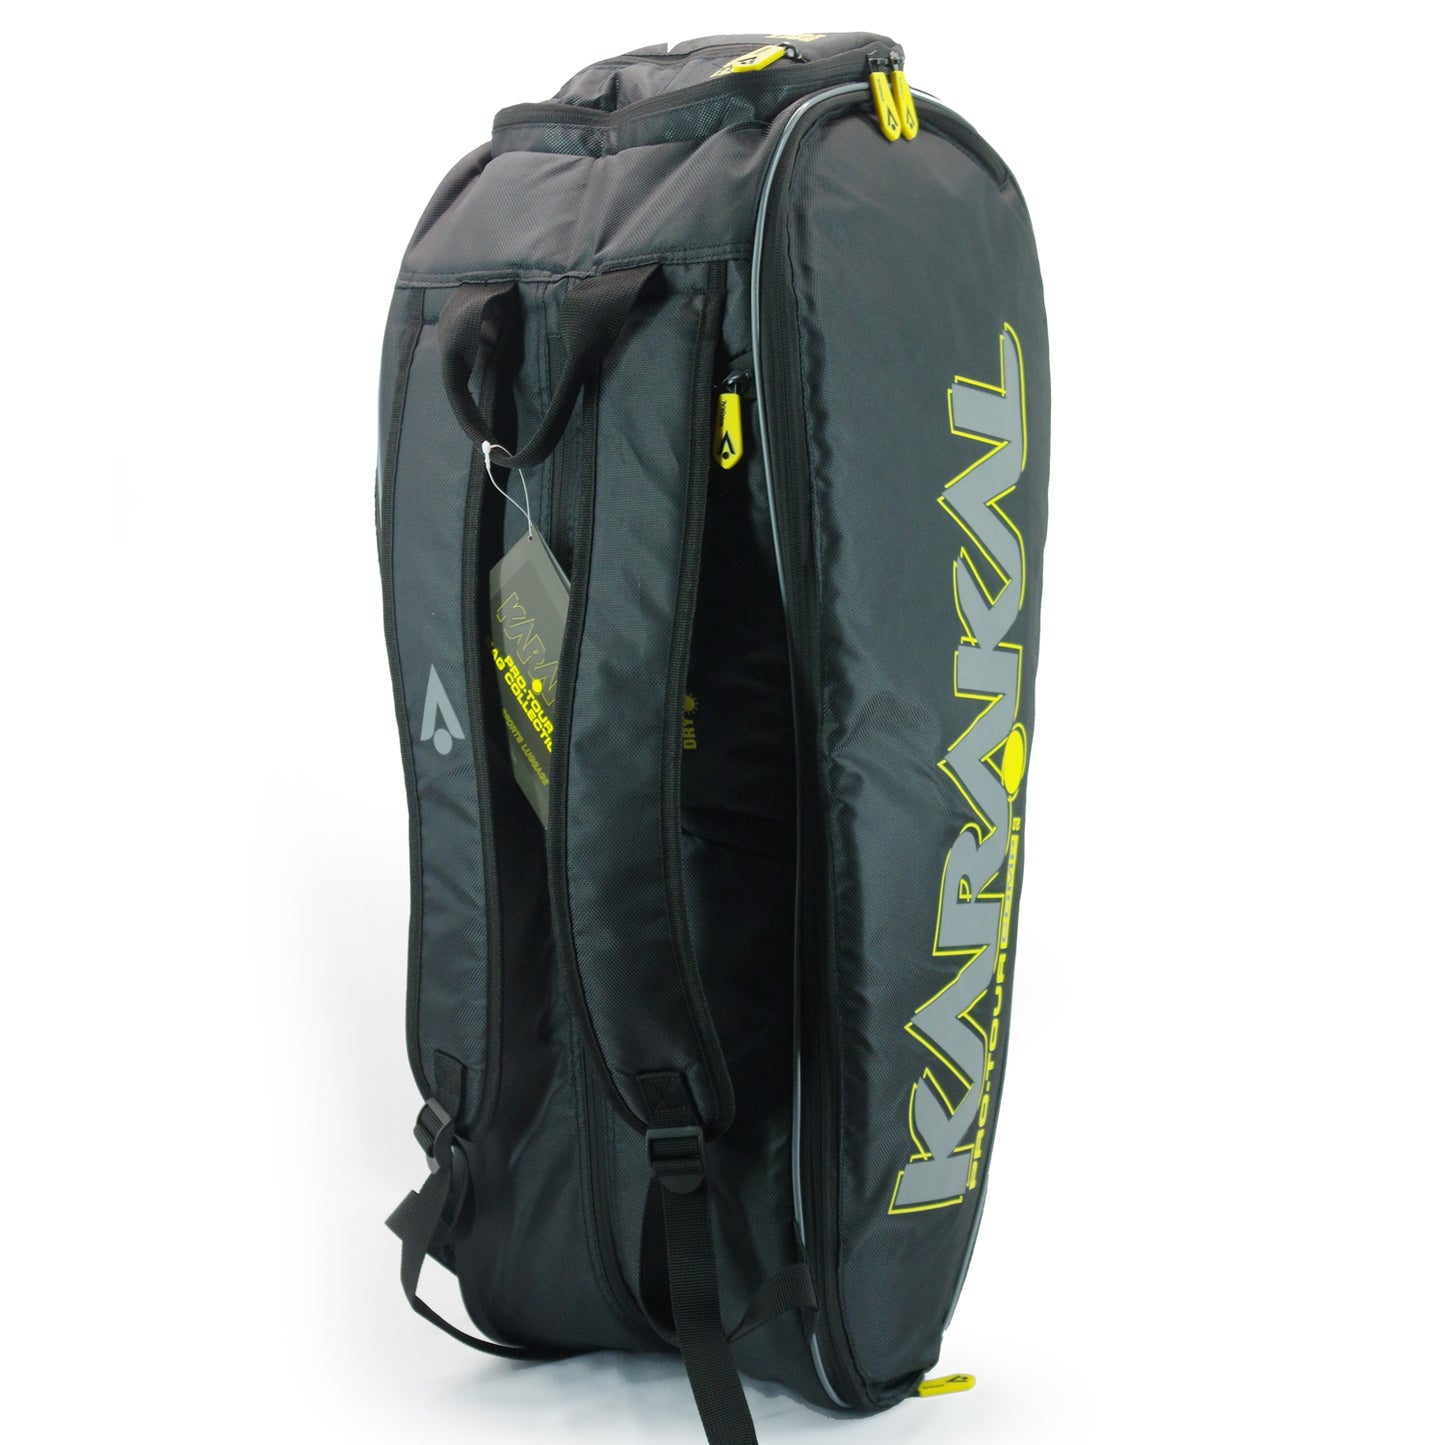 Karakal Pro Tour 2.0 Comp Racket Bag with Yellow Trim